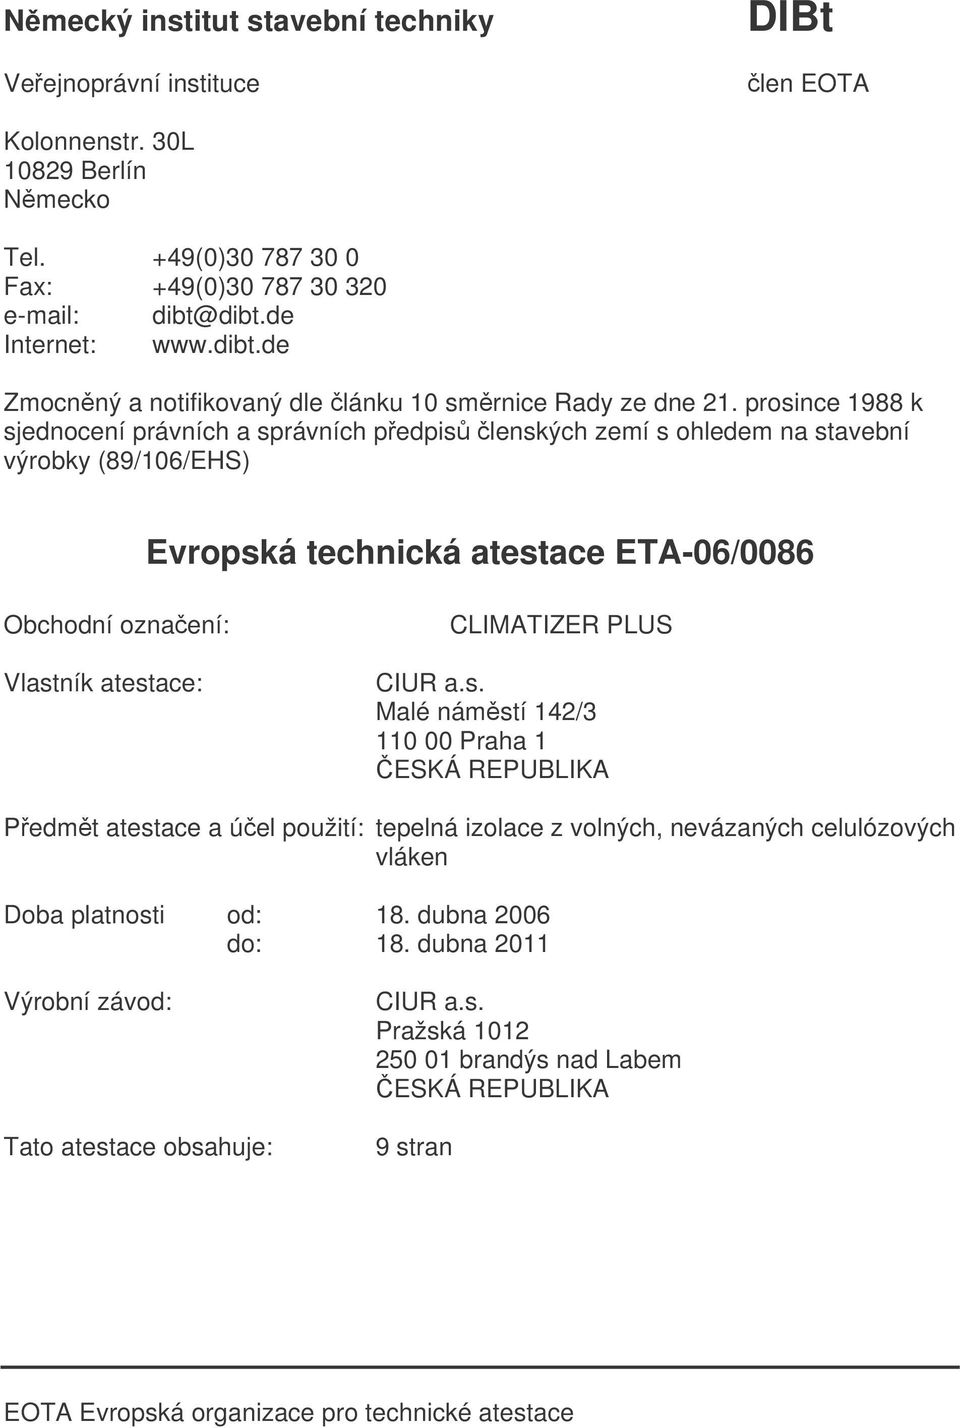 prosince 1988 k sjednocení právních a správních pedpis lenských zemí s ohledem na stavební výrobky (89/106/EHS) Evropská technická atestace ETA-06/0086 Obchodní oznaení: Vlastník atestace: CLIMATIZER